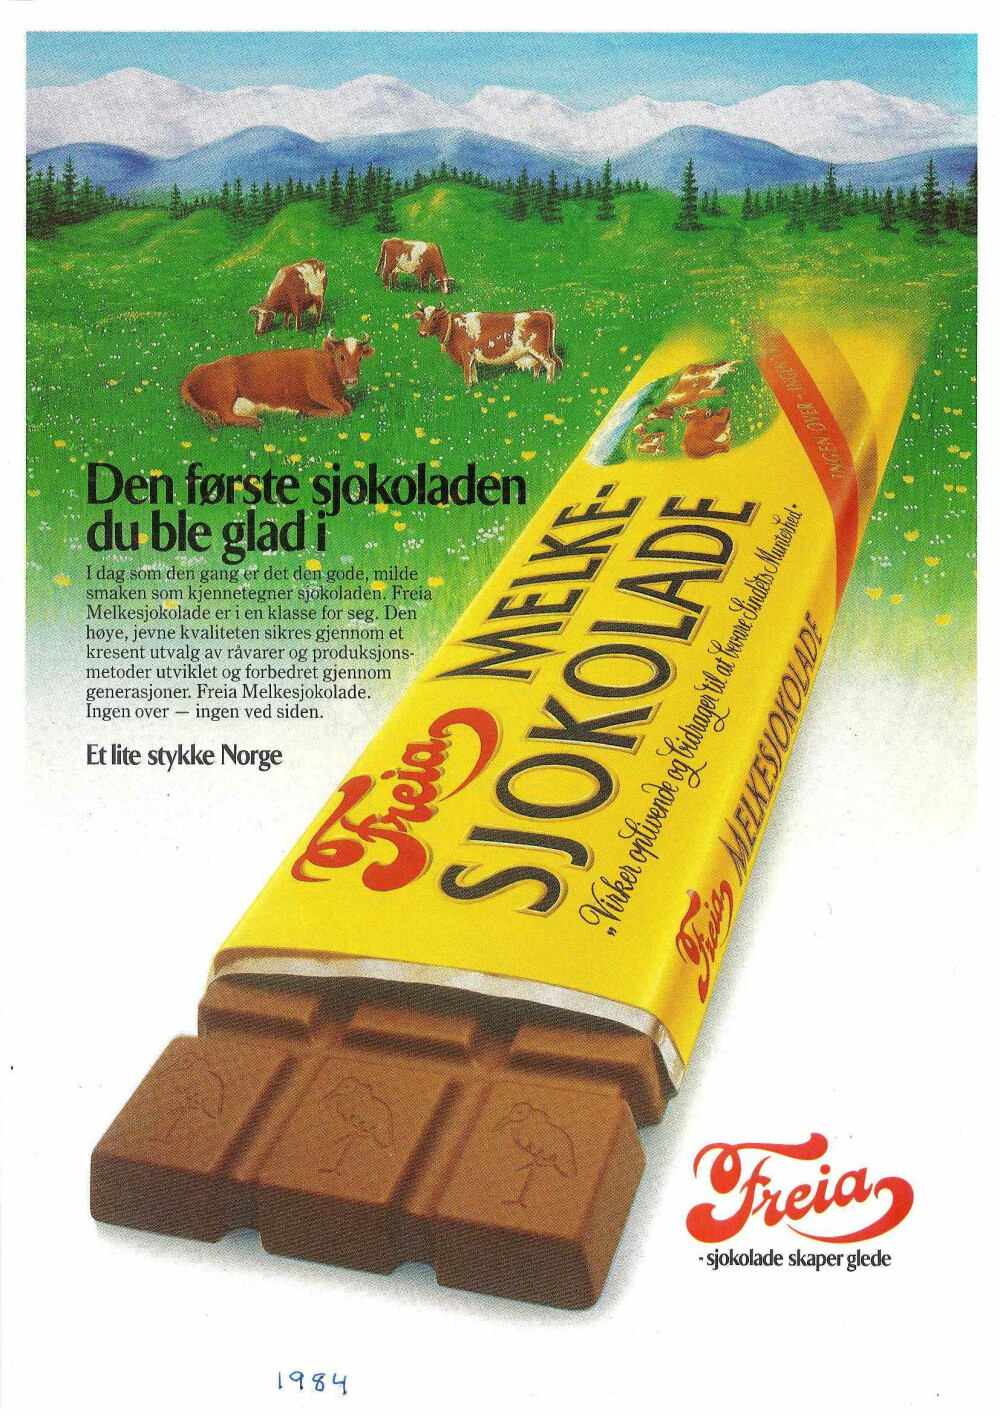 <b>KLASSIKER:</b> Melkesjokoladen fra Freia har fulgt oss i generasjoner. Selv om sjokoladen har den samme gode smaken, har utseendet forandret seg litt gjennom årene. Dette er en annonse fra 1984.